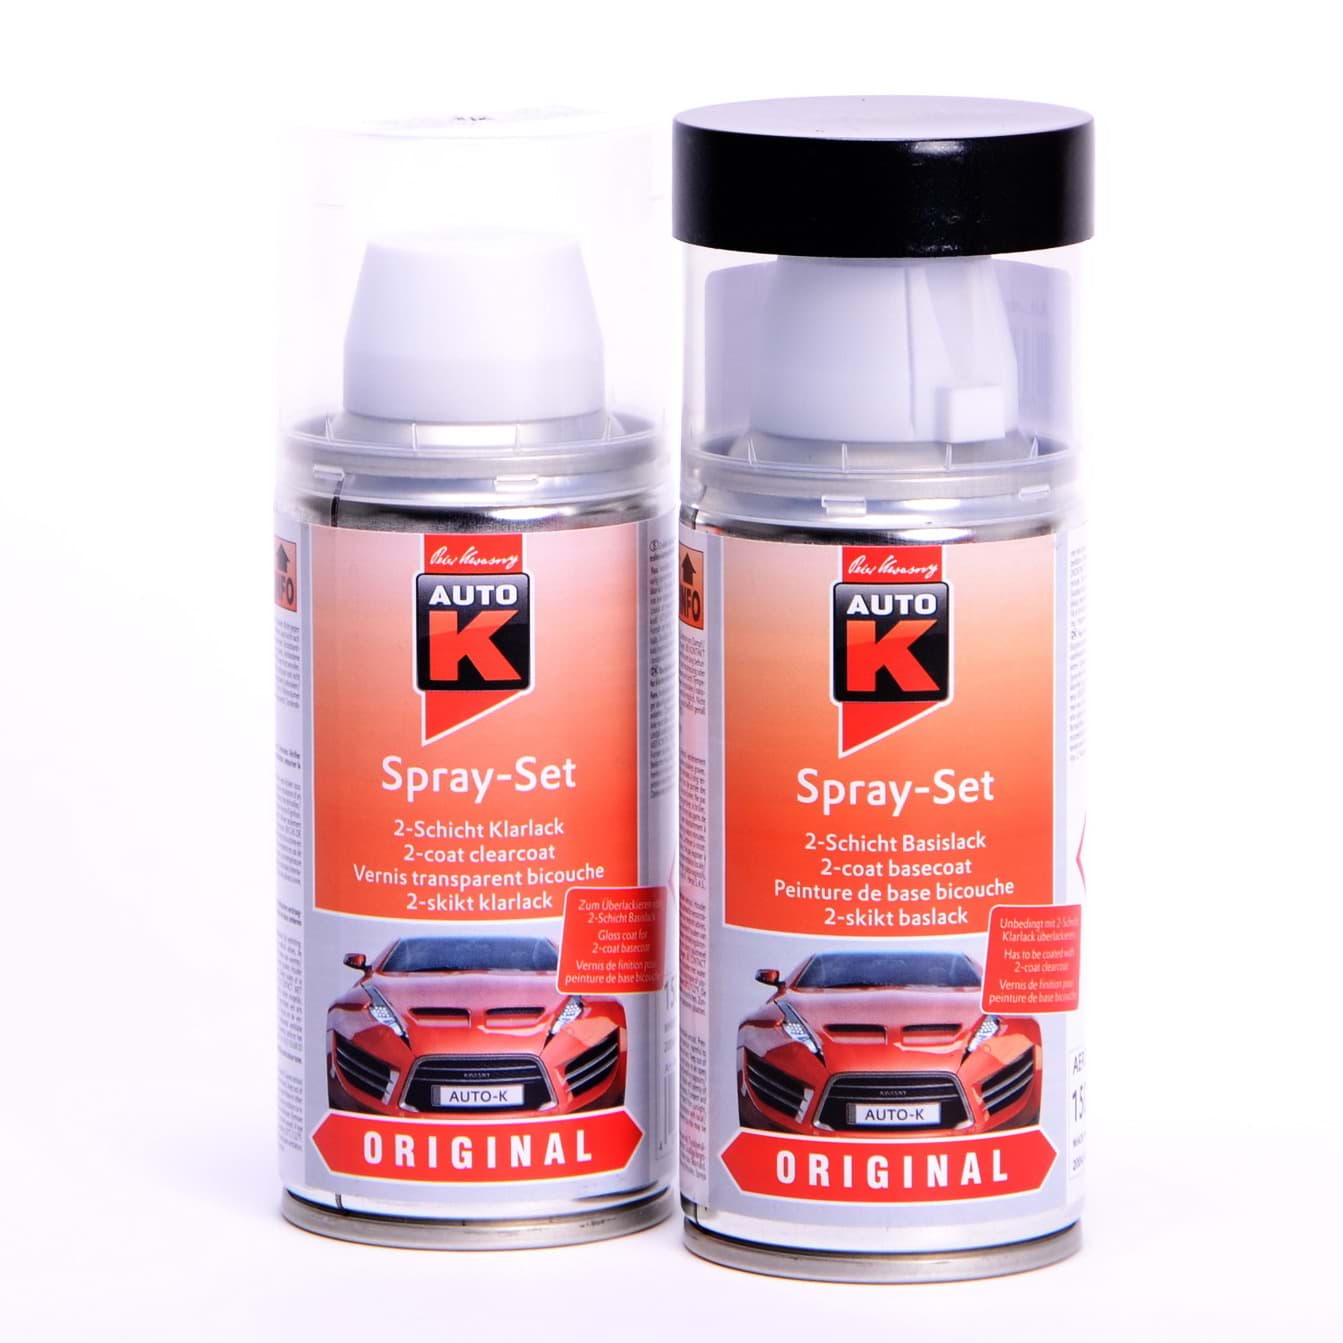 Afbeelding van Auto-K Spray-Set Autolack für Mercedes 650 Calcitweiss 23342